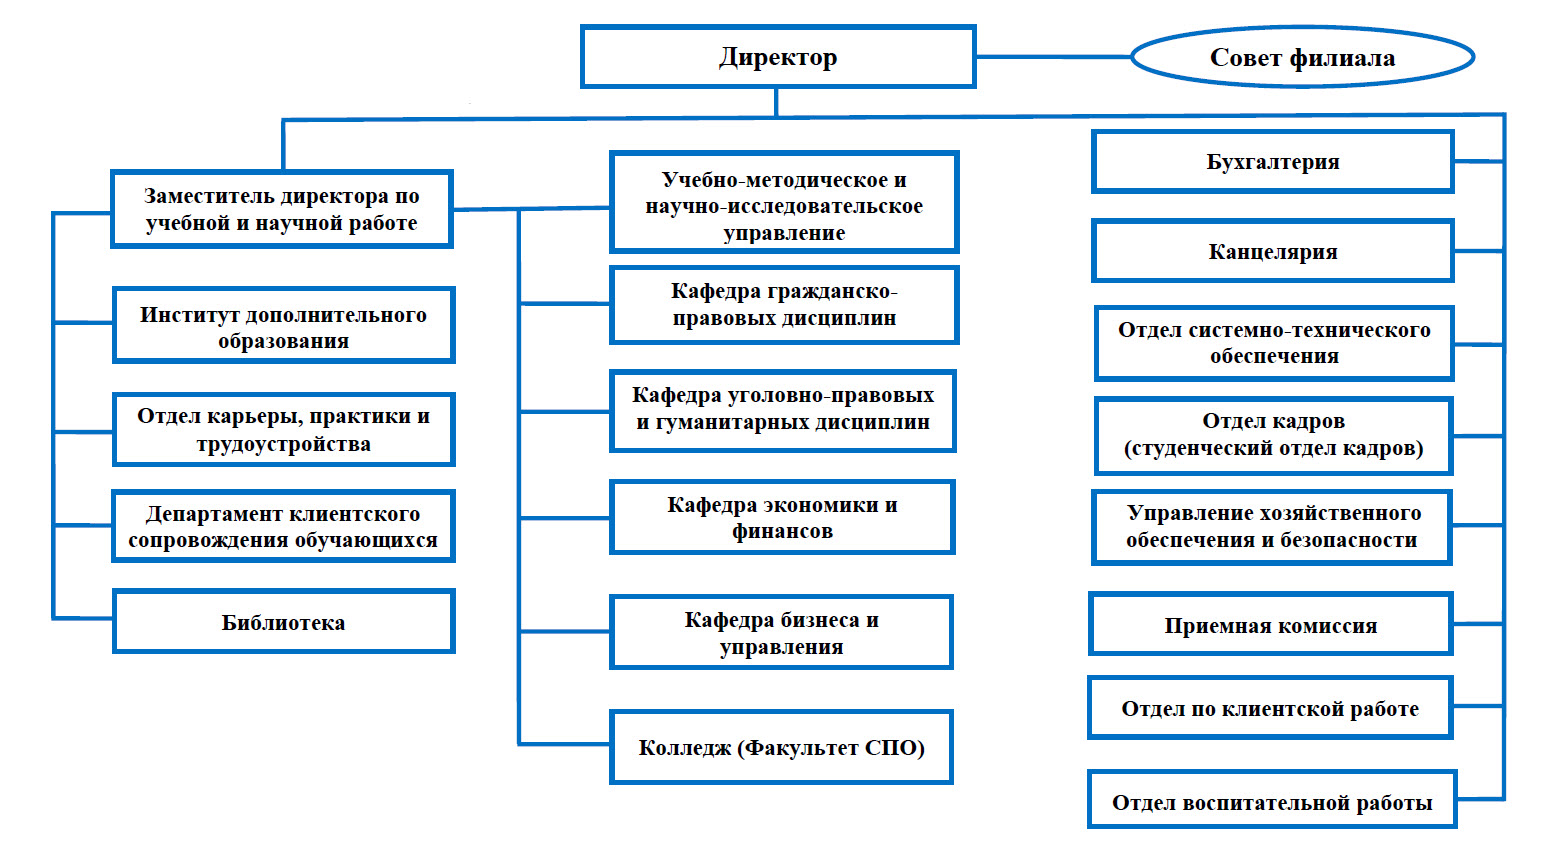 Организационно-штатная структура